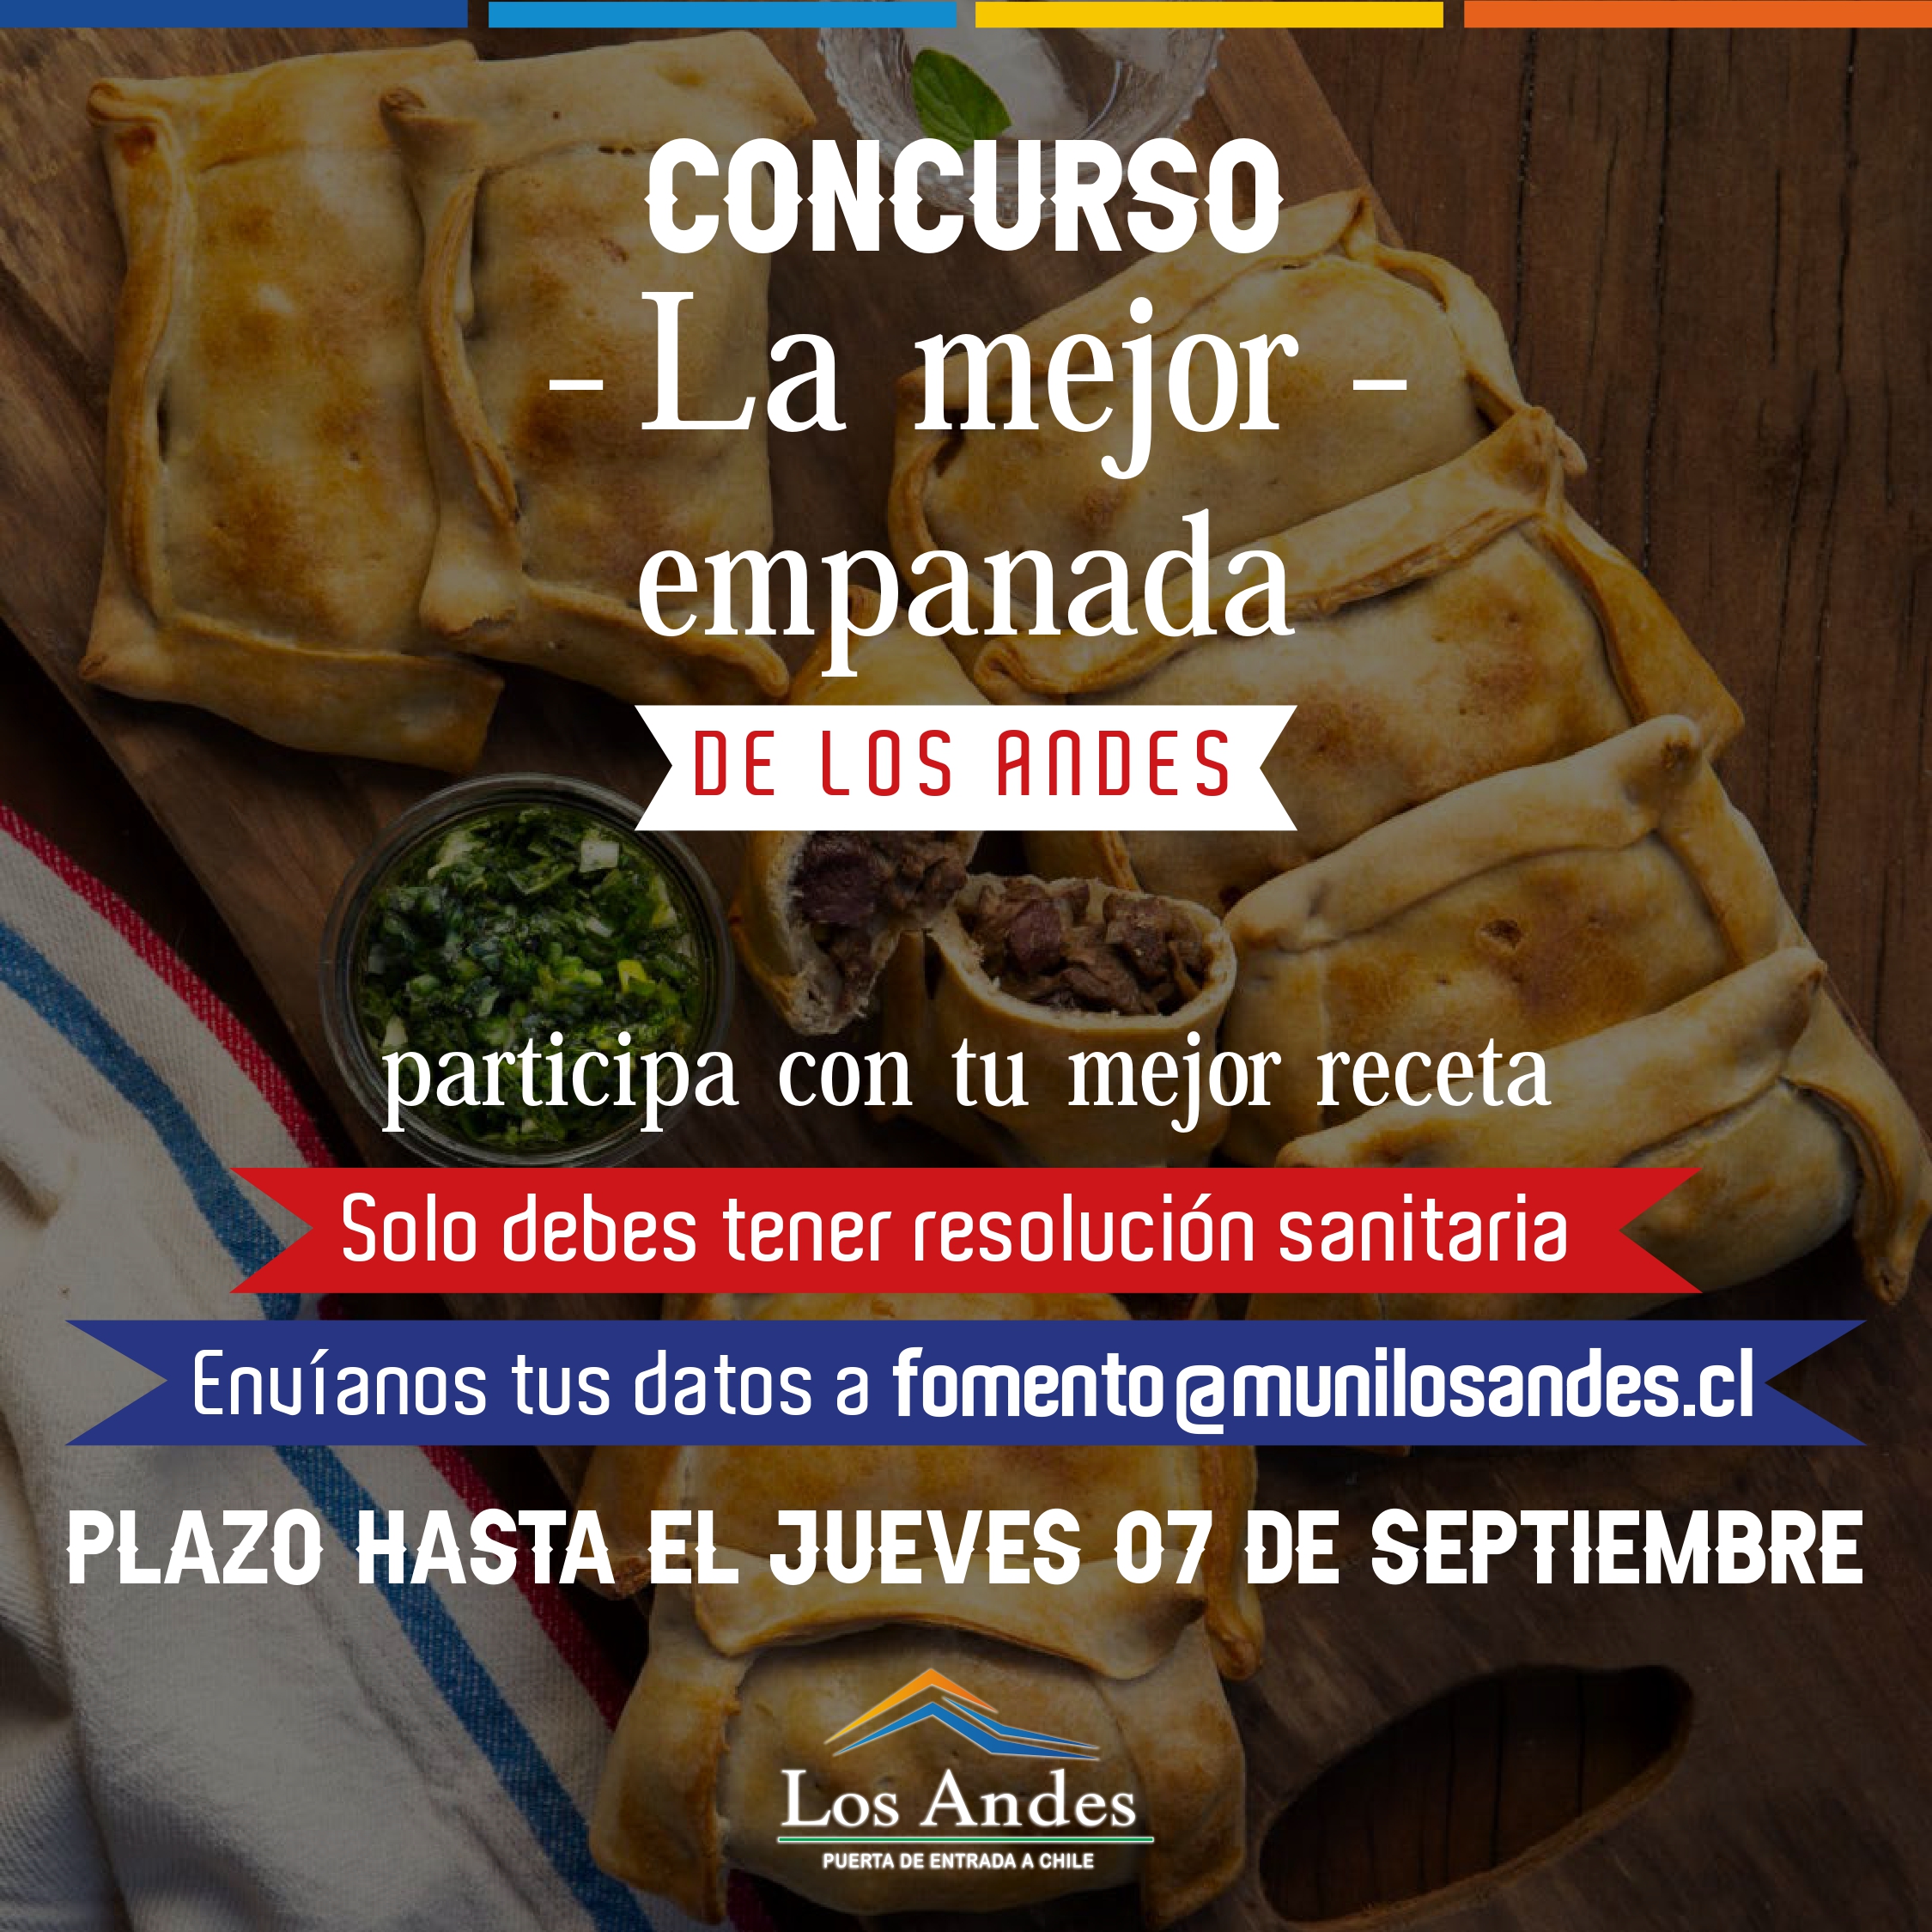 LOS ANDES: Municipio andino invita a participar en el concurso “La mejor empanada de Los Andes”